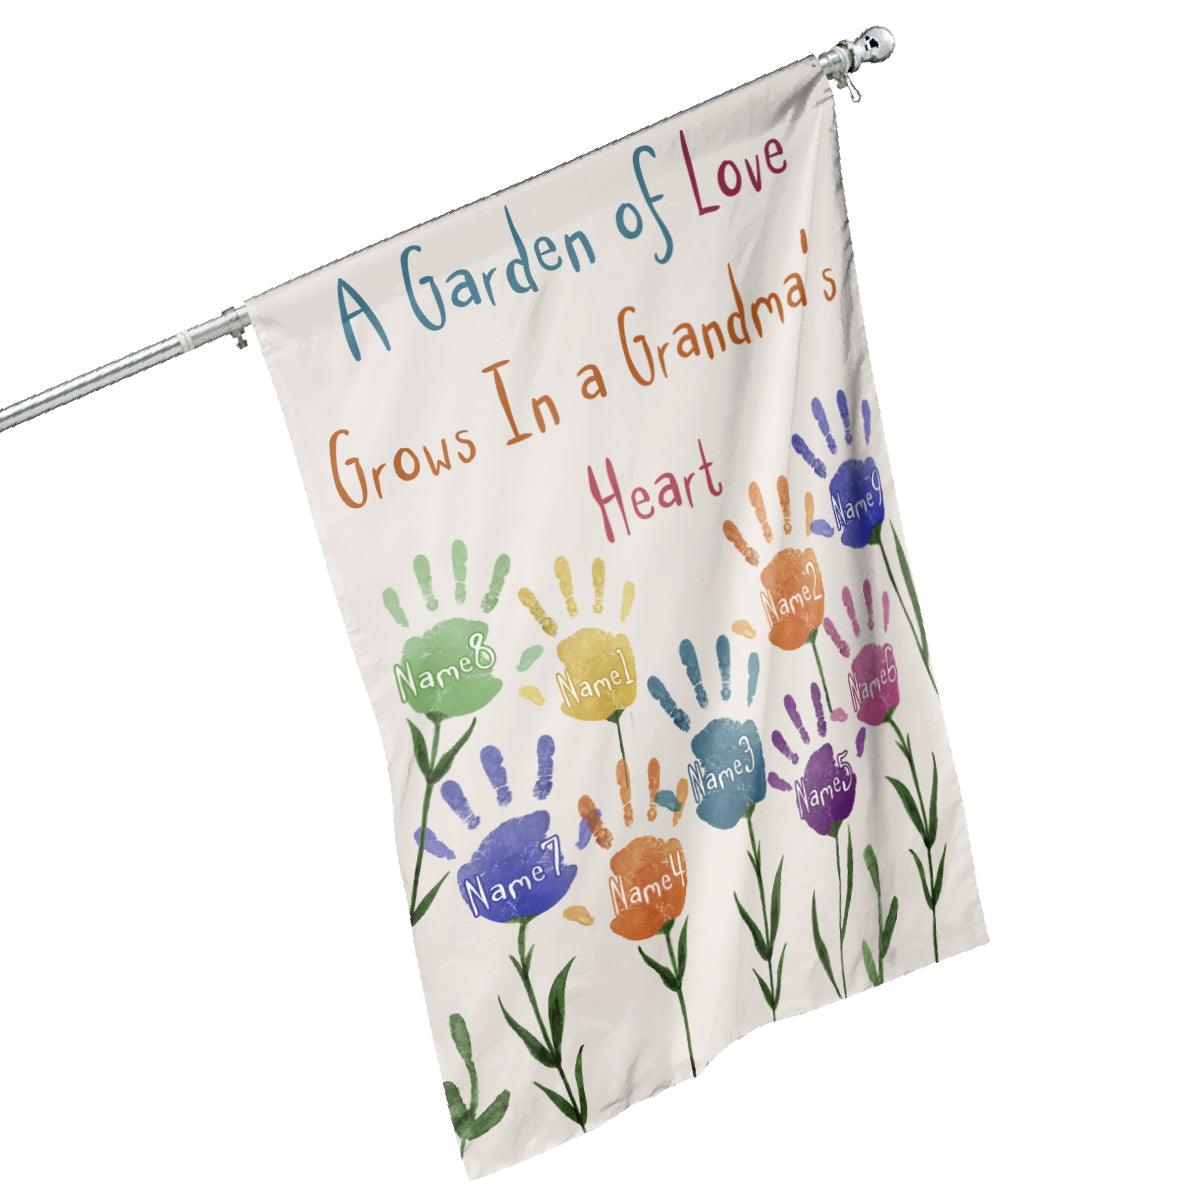 A Garden Of Love Grows In A Grandma's Heart, Family Custom Flag, Gift For Grandma-Macorner